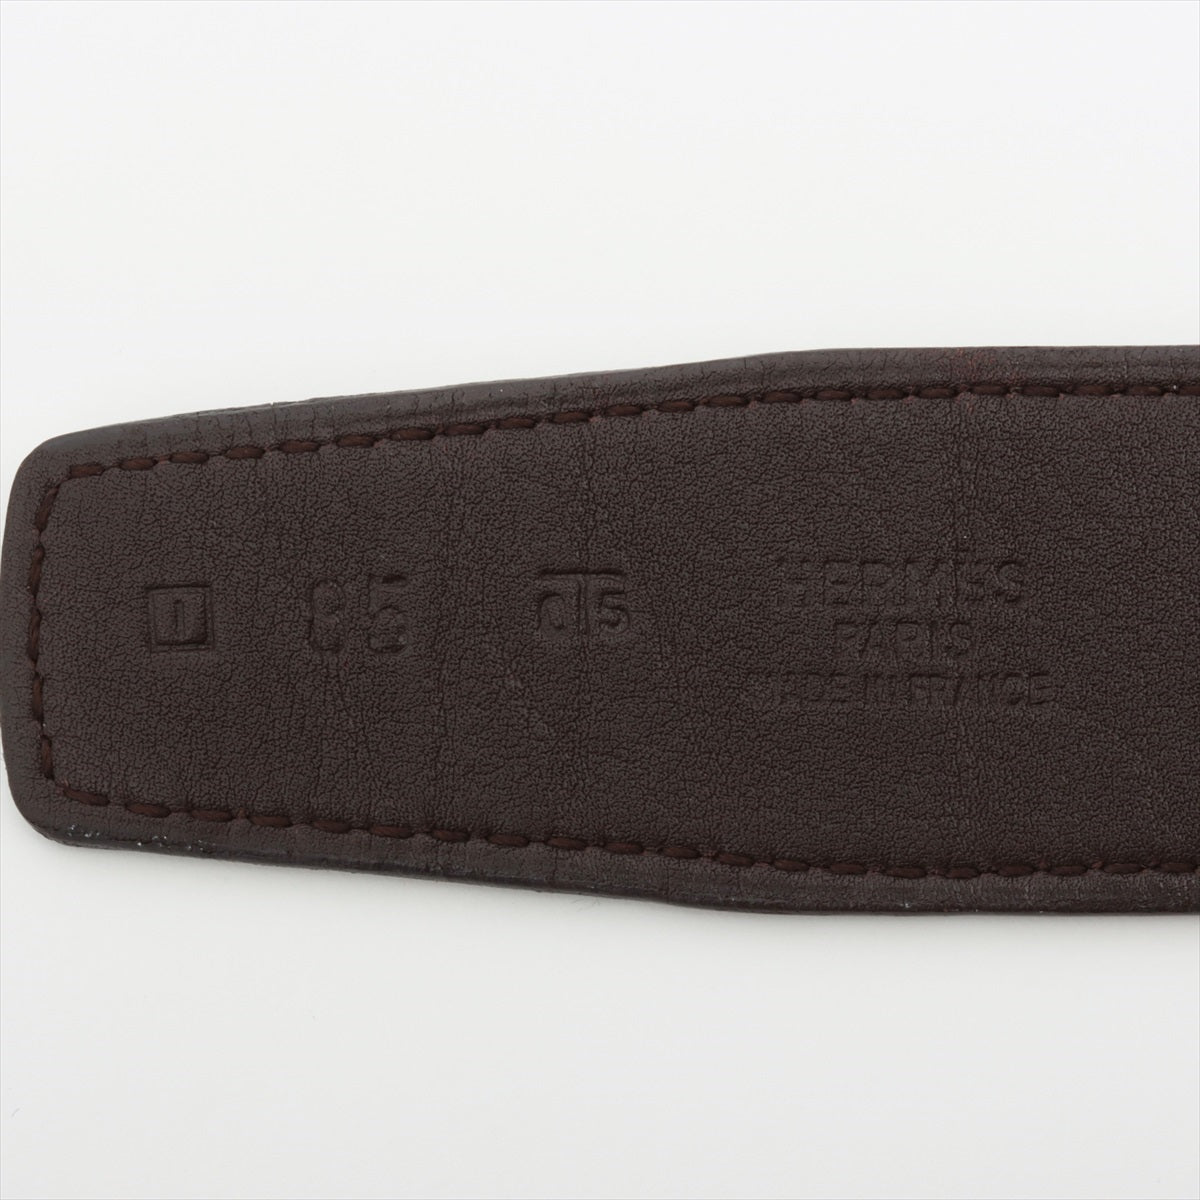 Hermès Evelyne □I: 2005 Belt 85 Leather Brown